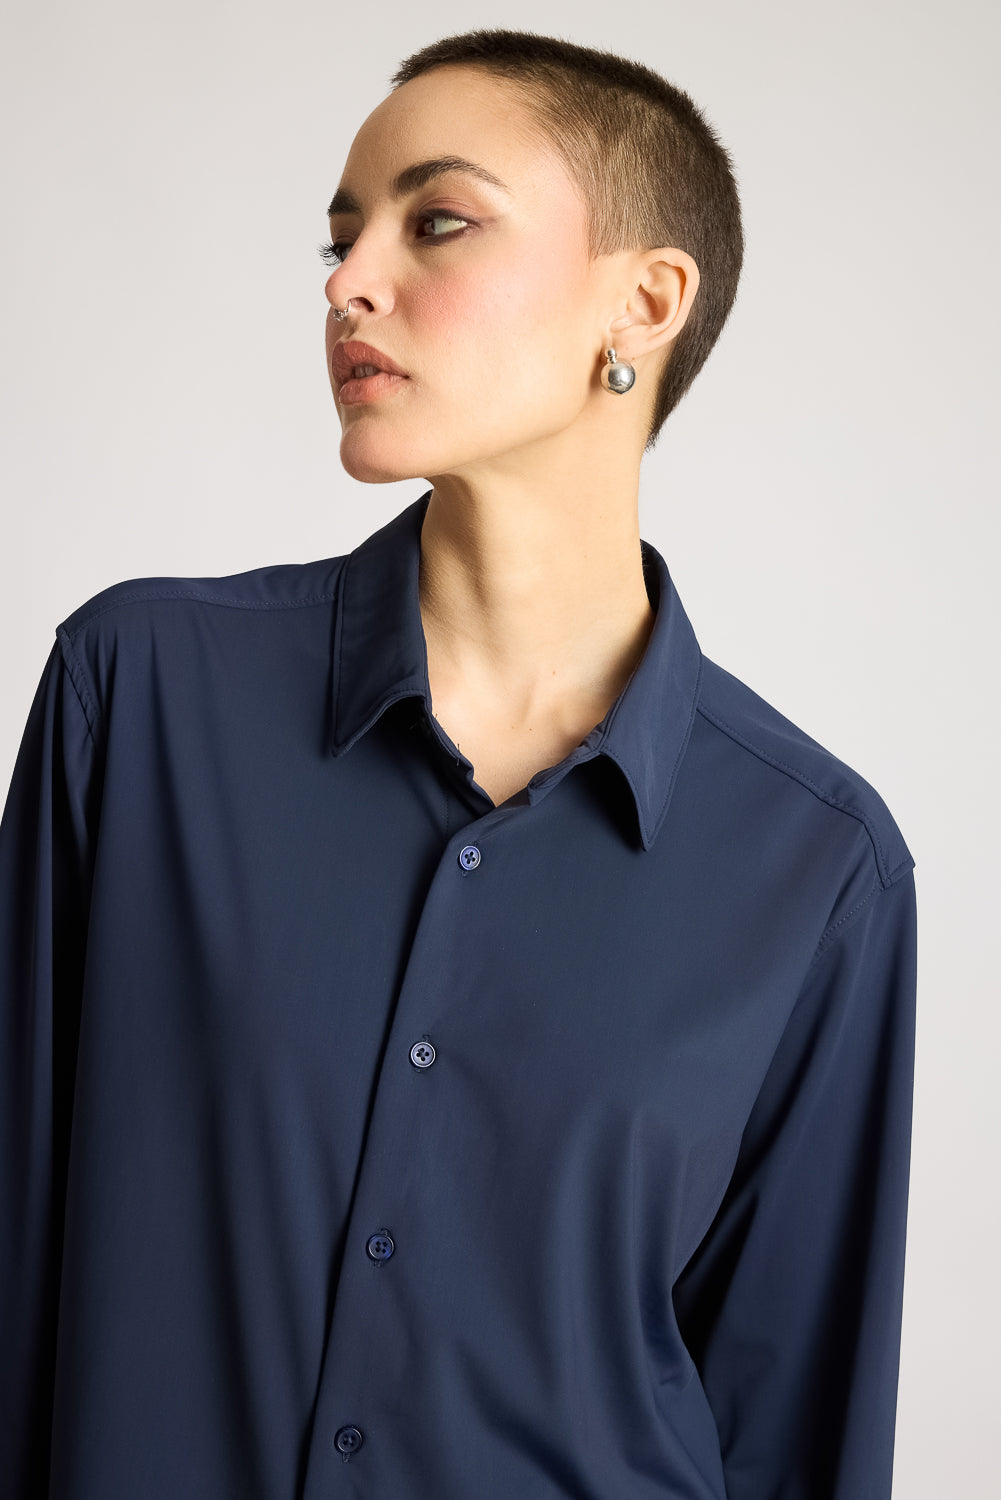 Women's Shirt- Navy Blue